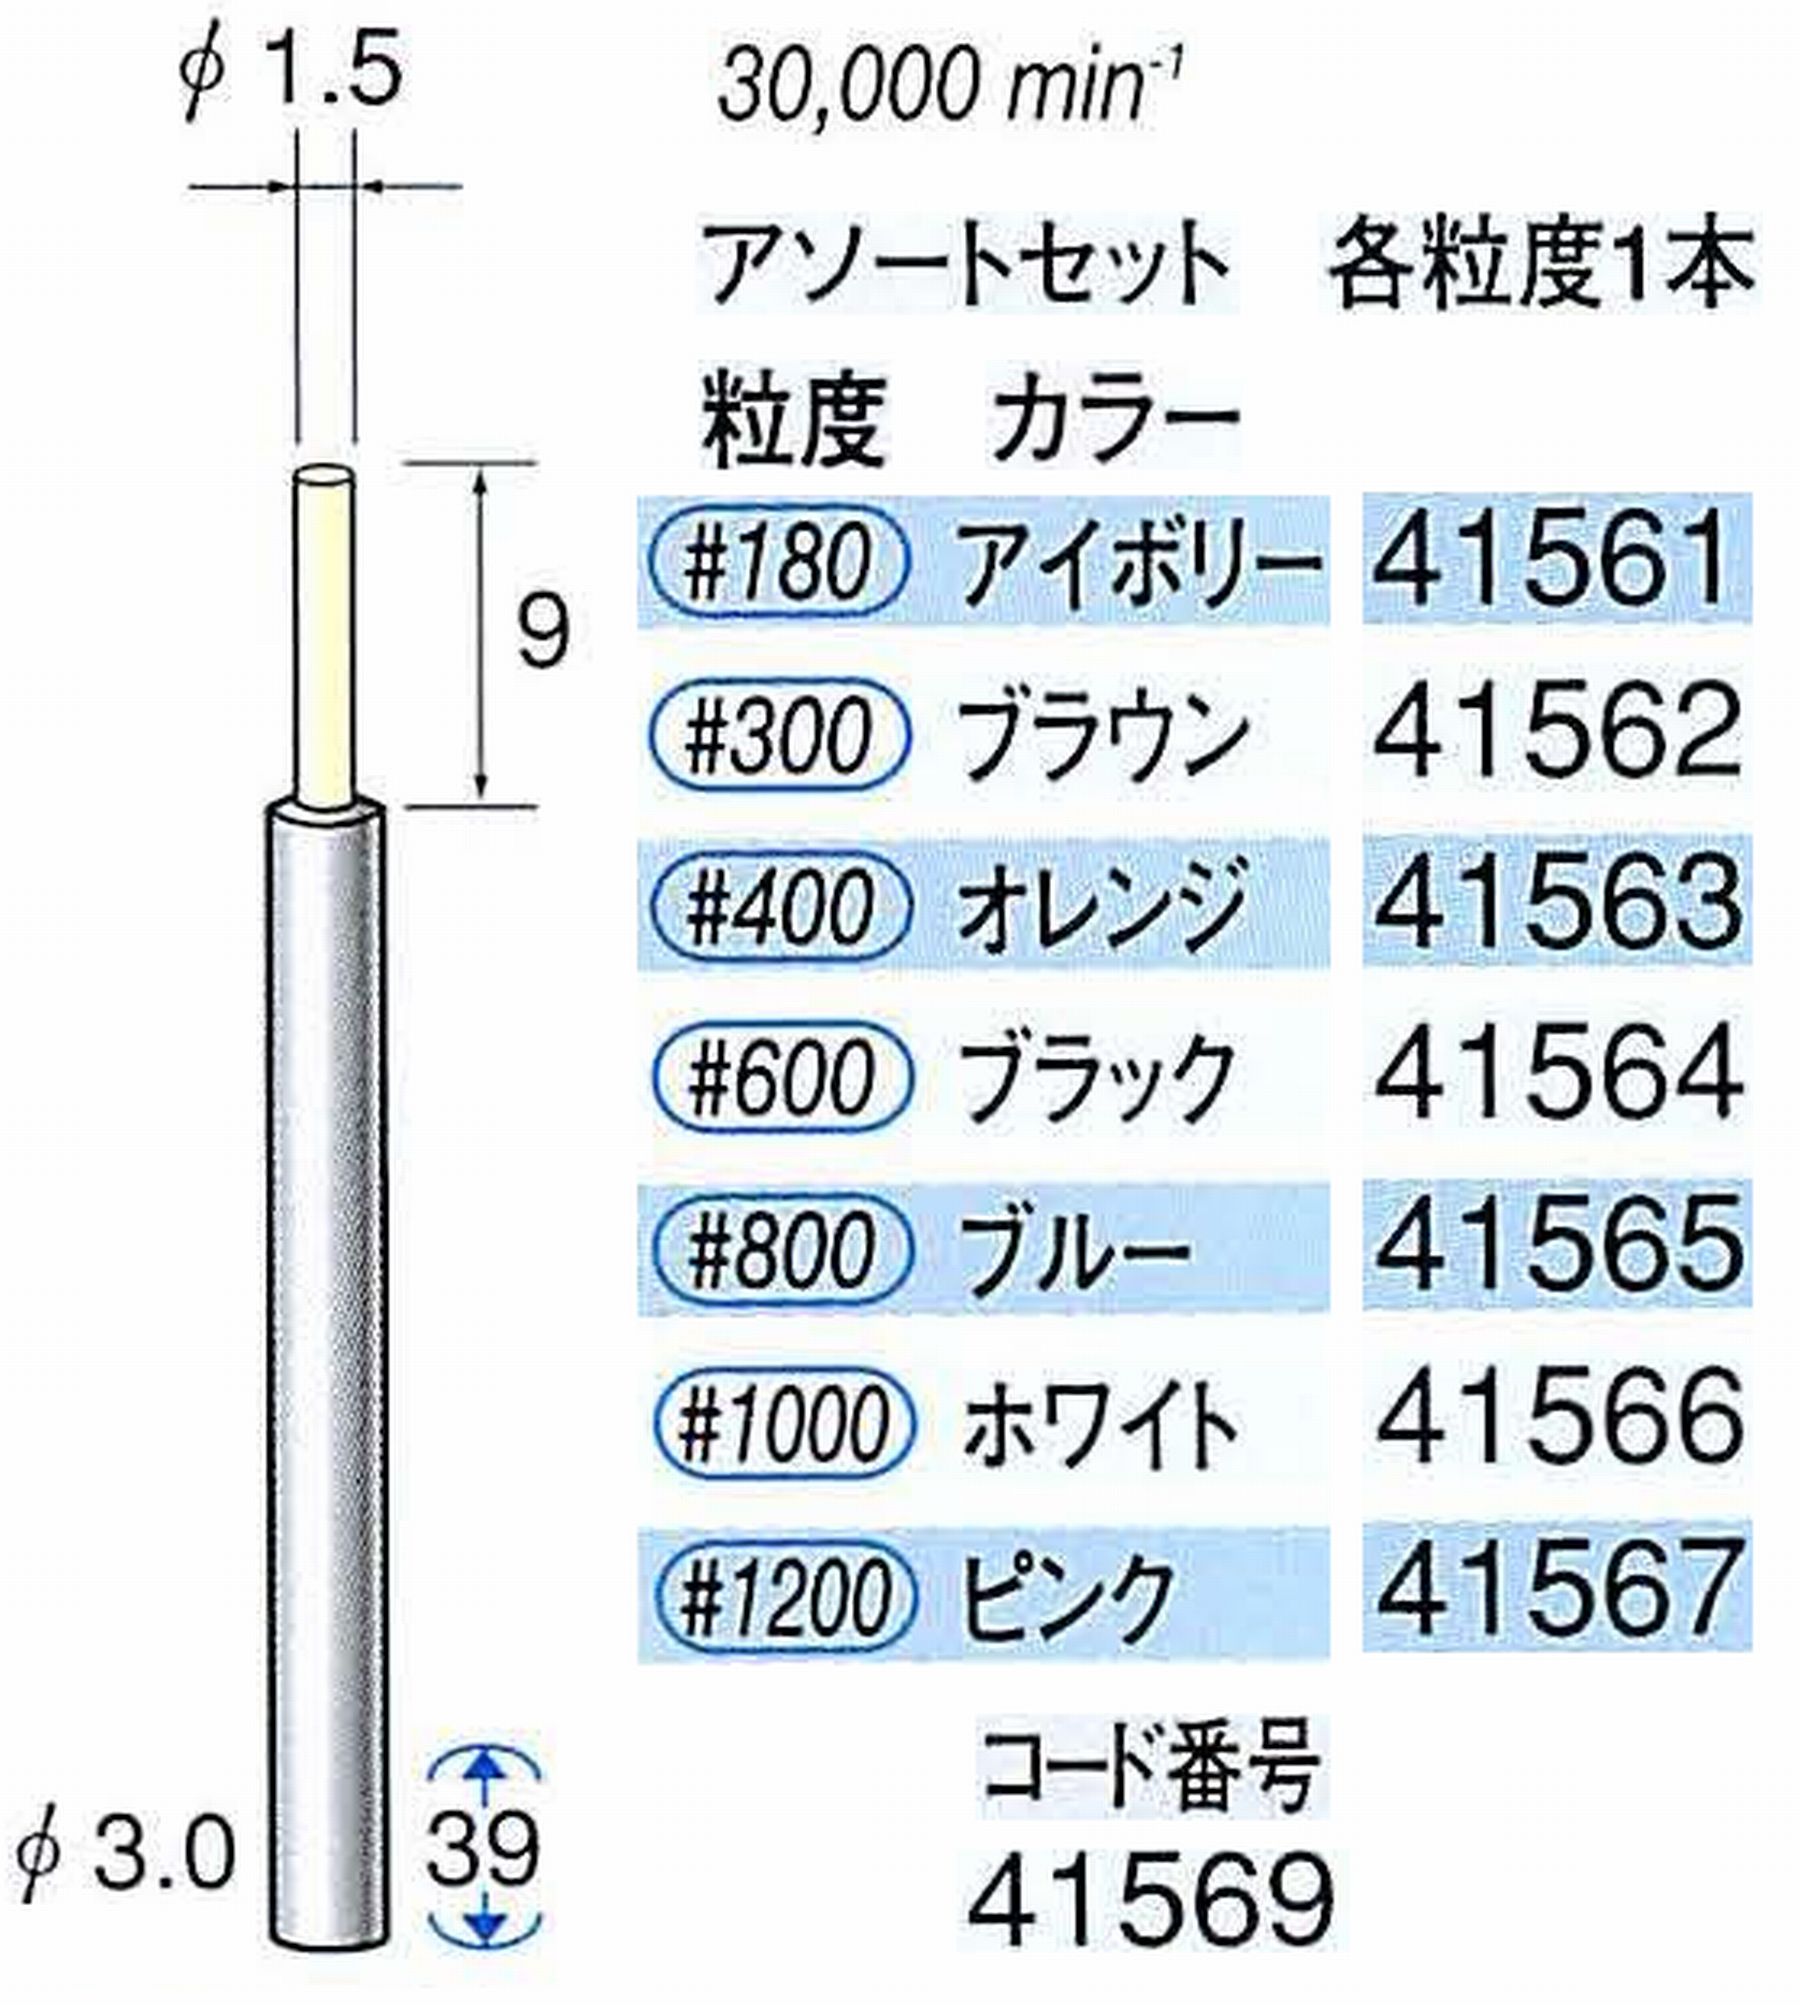 ナカニシ/NAKANISHI セラファイバー精密軸付砥石 アソートセット(各粒度1本) 軸径(シャンク) φ3.0mm 41569